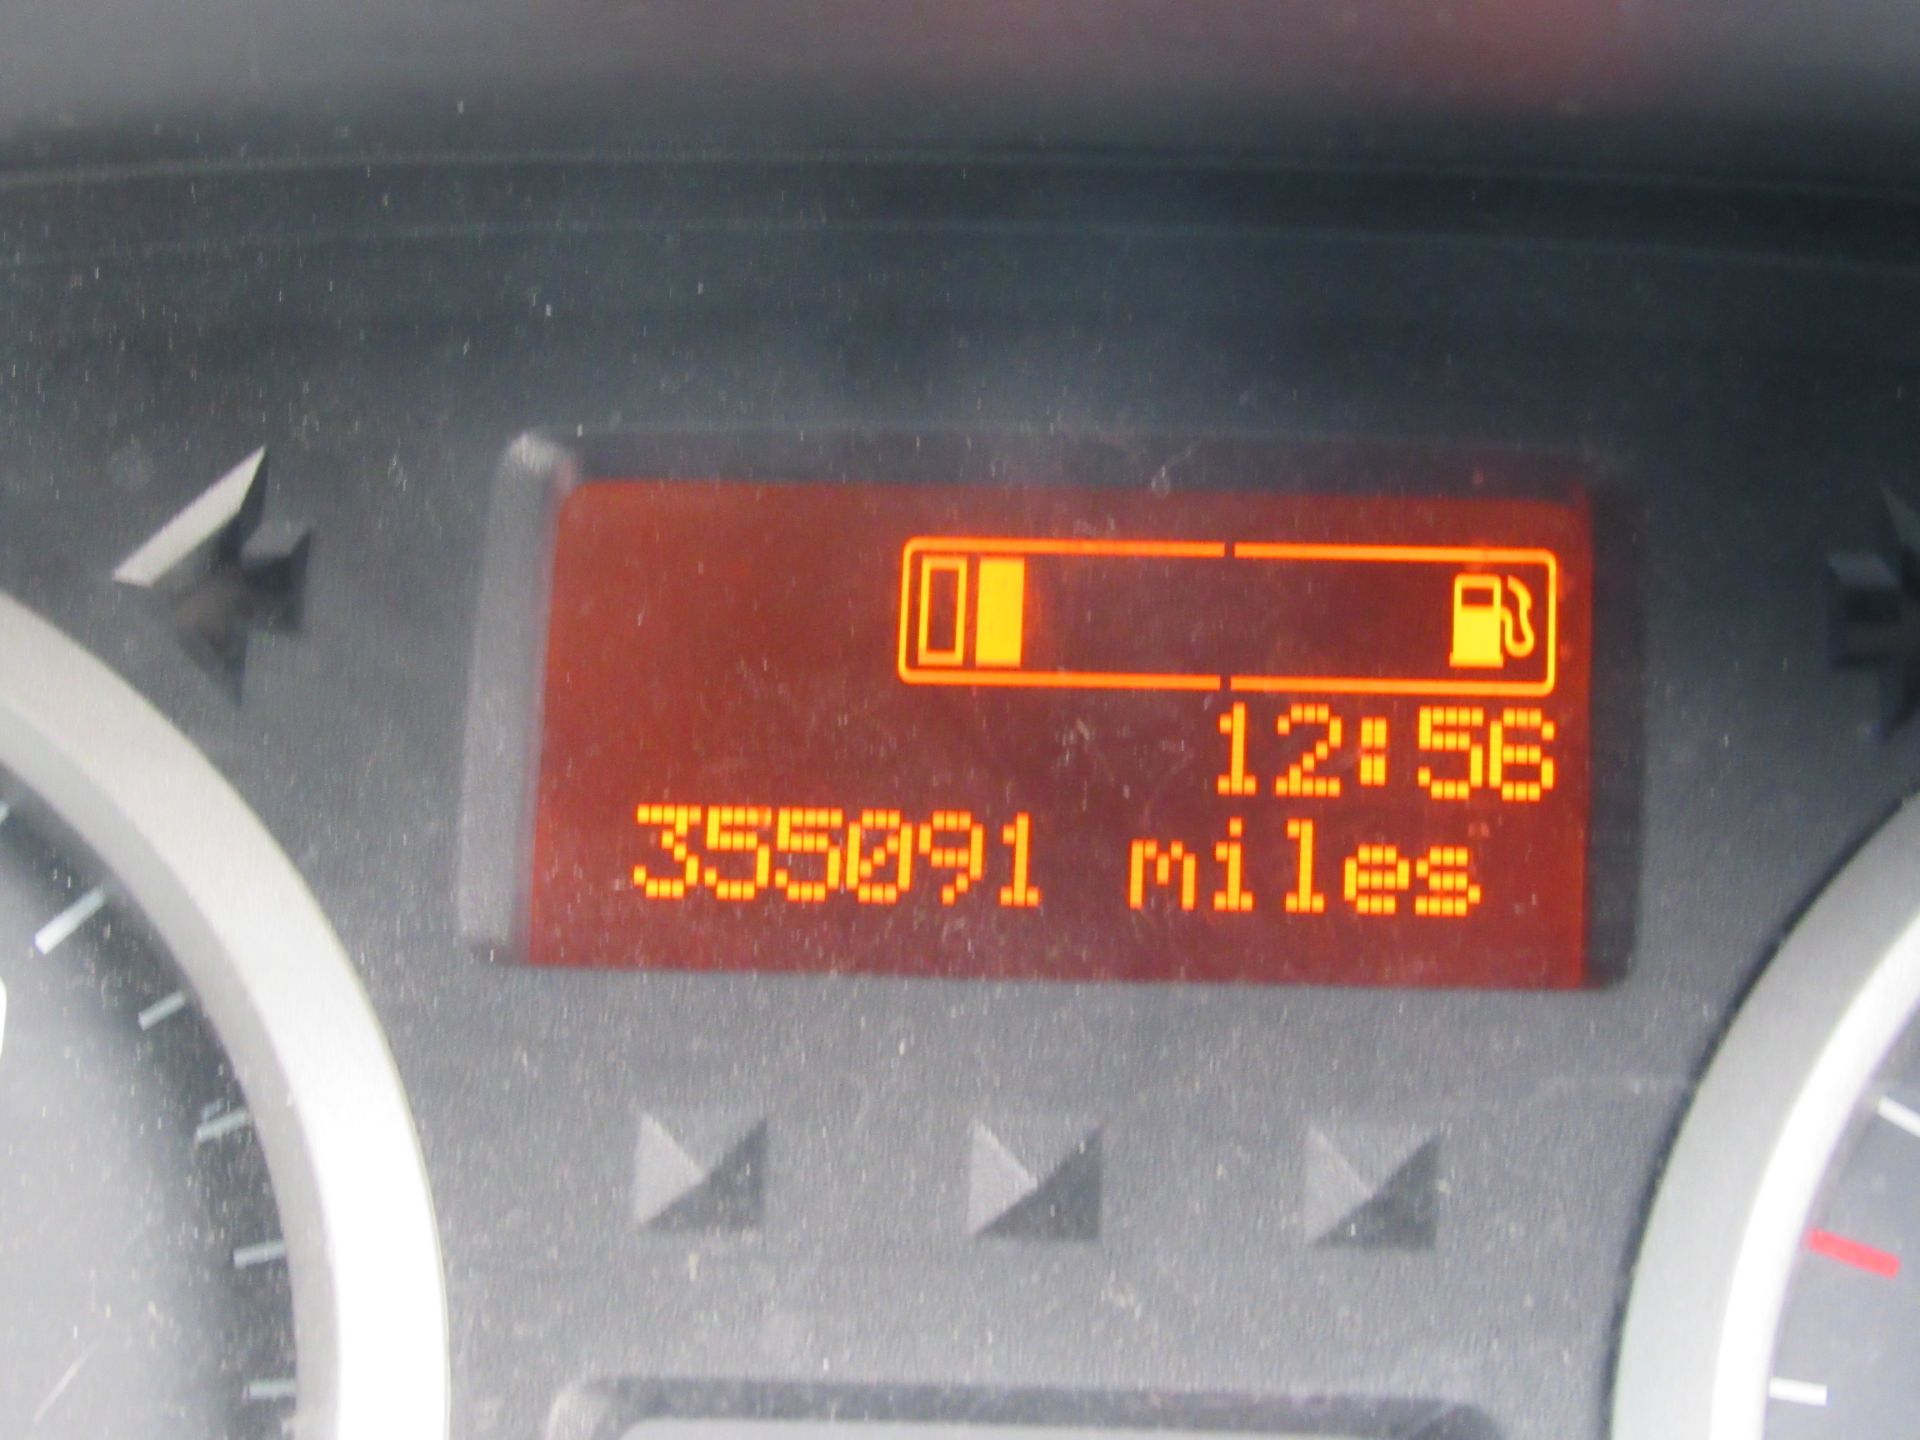 Vauxhall Vivaro van LM14 AHG, 355091 miles, Diesel, First Registered March 2014, MOT until 27 - Image 7 of 7